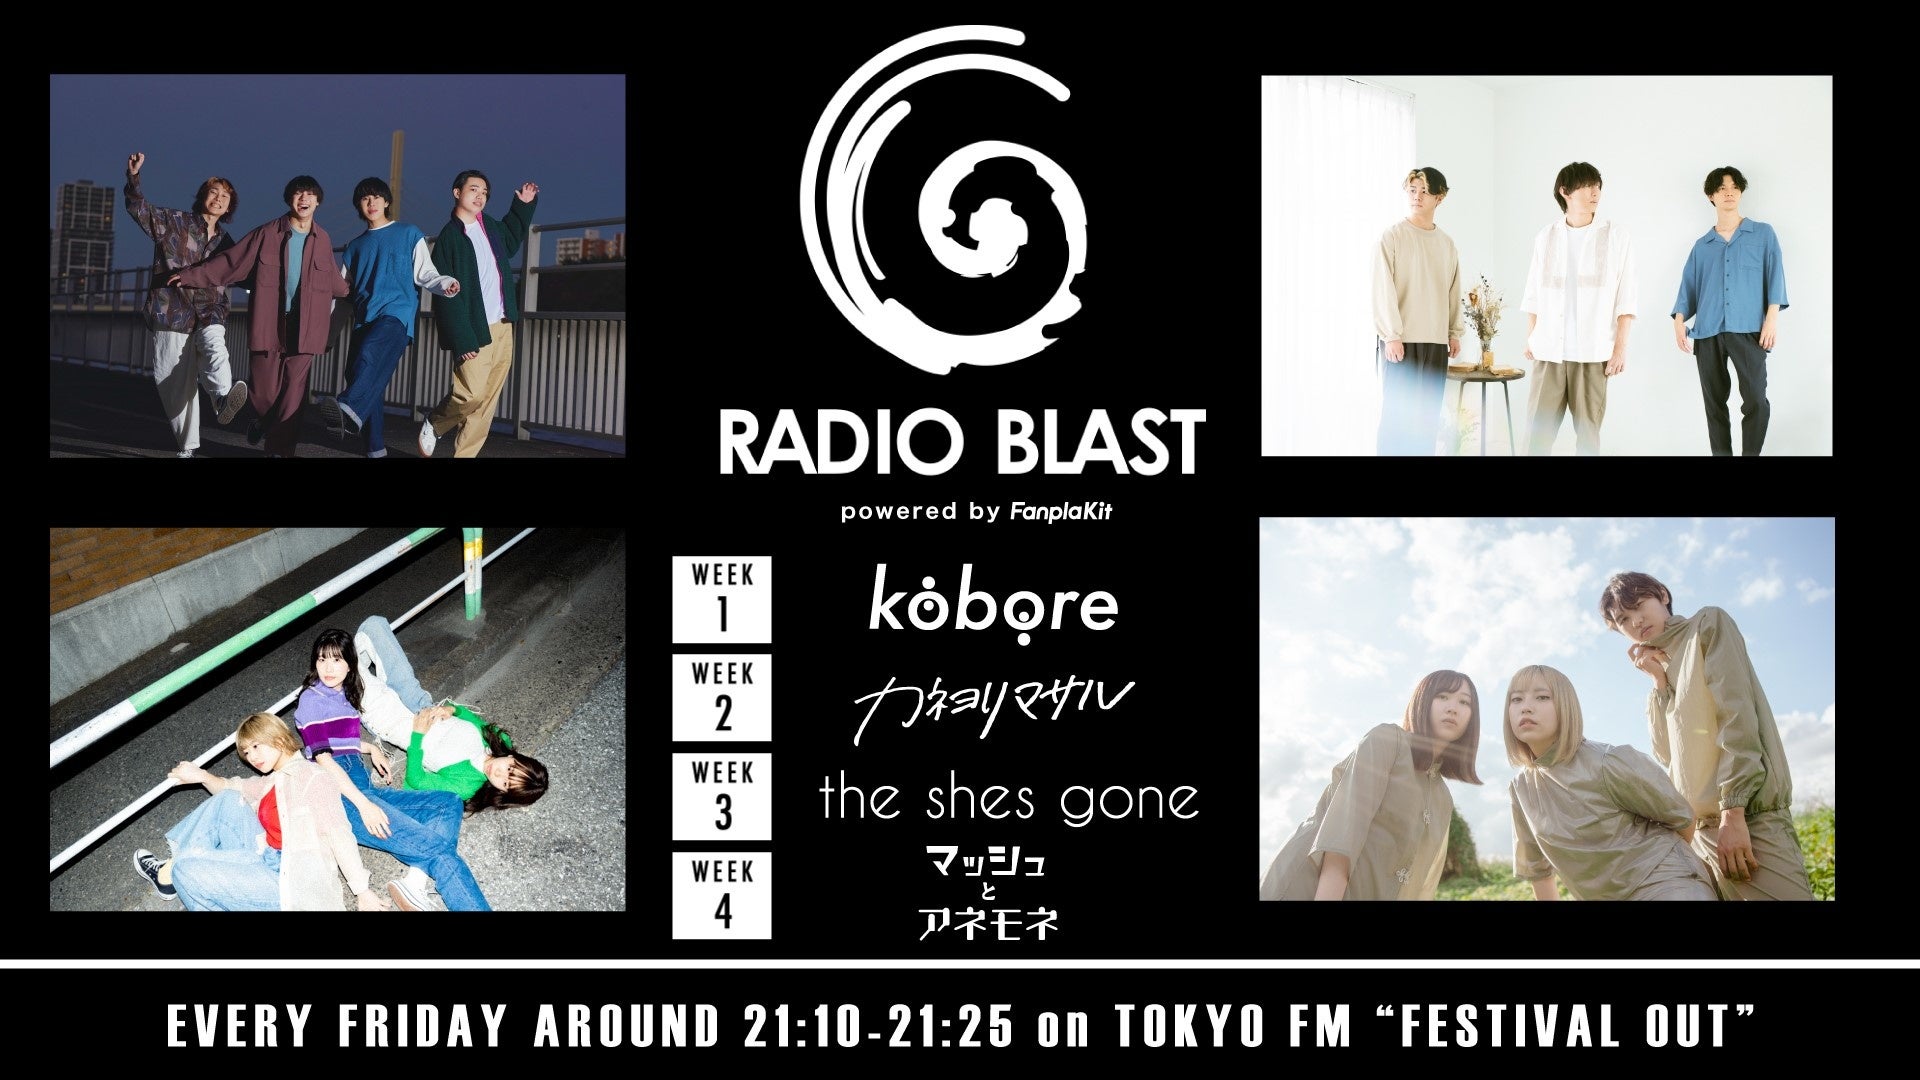 kobore・カネヨリマサル・the shes gone・マッシュとアネモネが新コーナーMCに就任！TOKYO FM 『FESTIVAL OUT』内コーナー